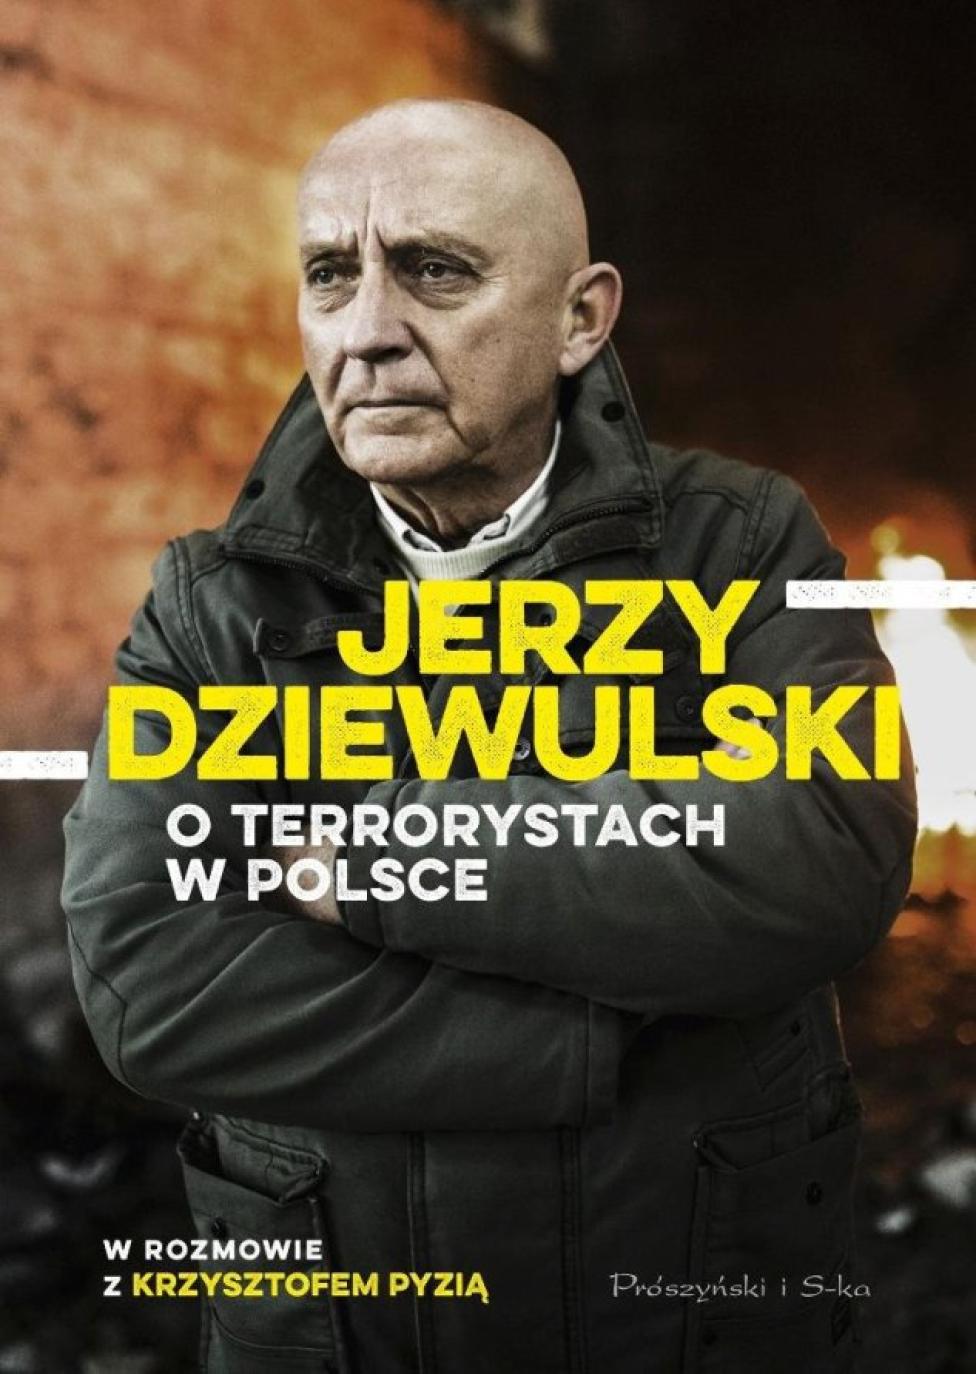 "Jerzy Dziewulski o terrorystach w Polsce"